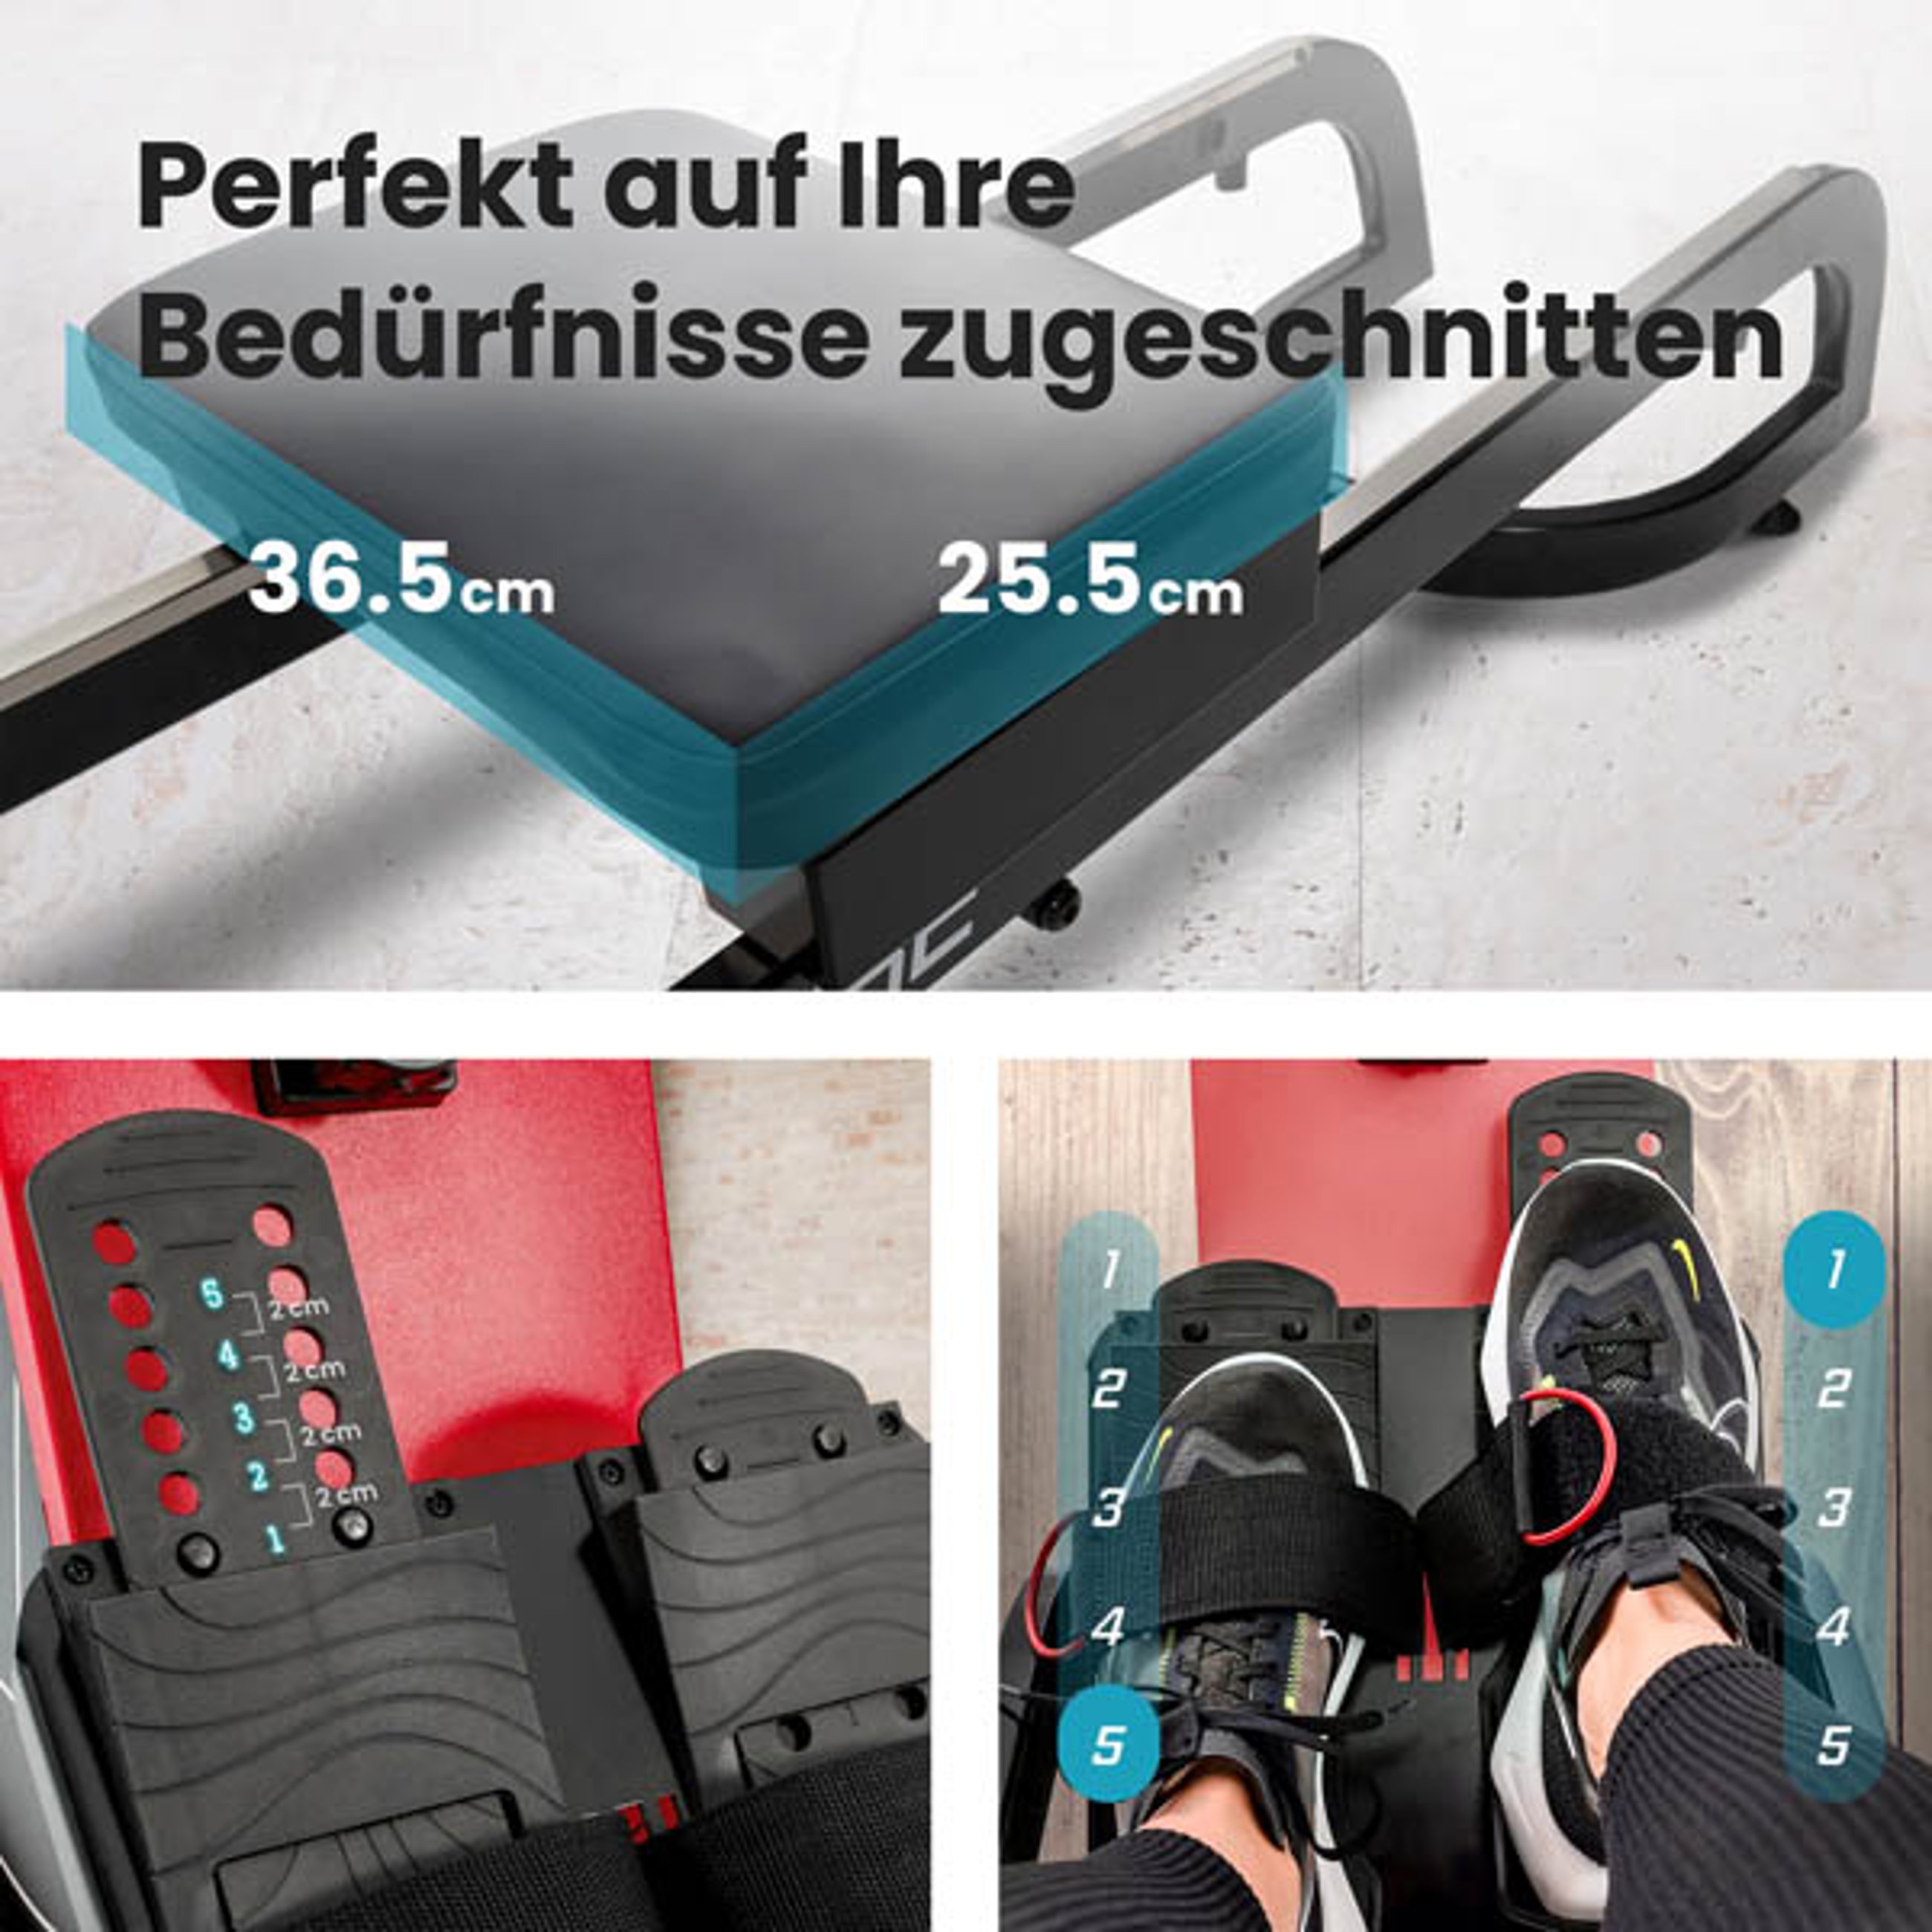 Rutschfeste Fußpedale und ergonomischer Sattel bei 070R Nuke